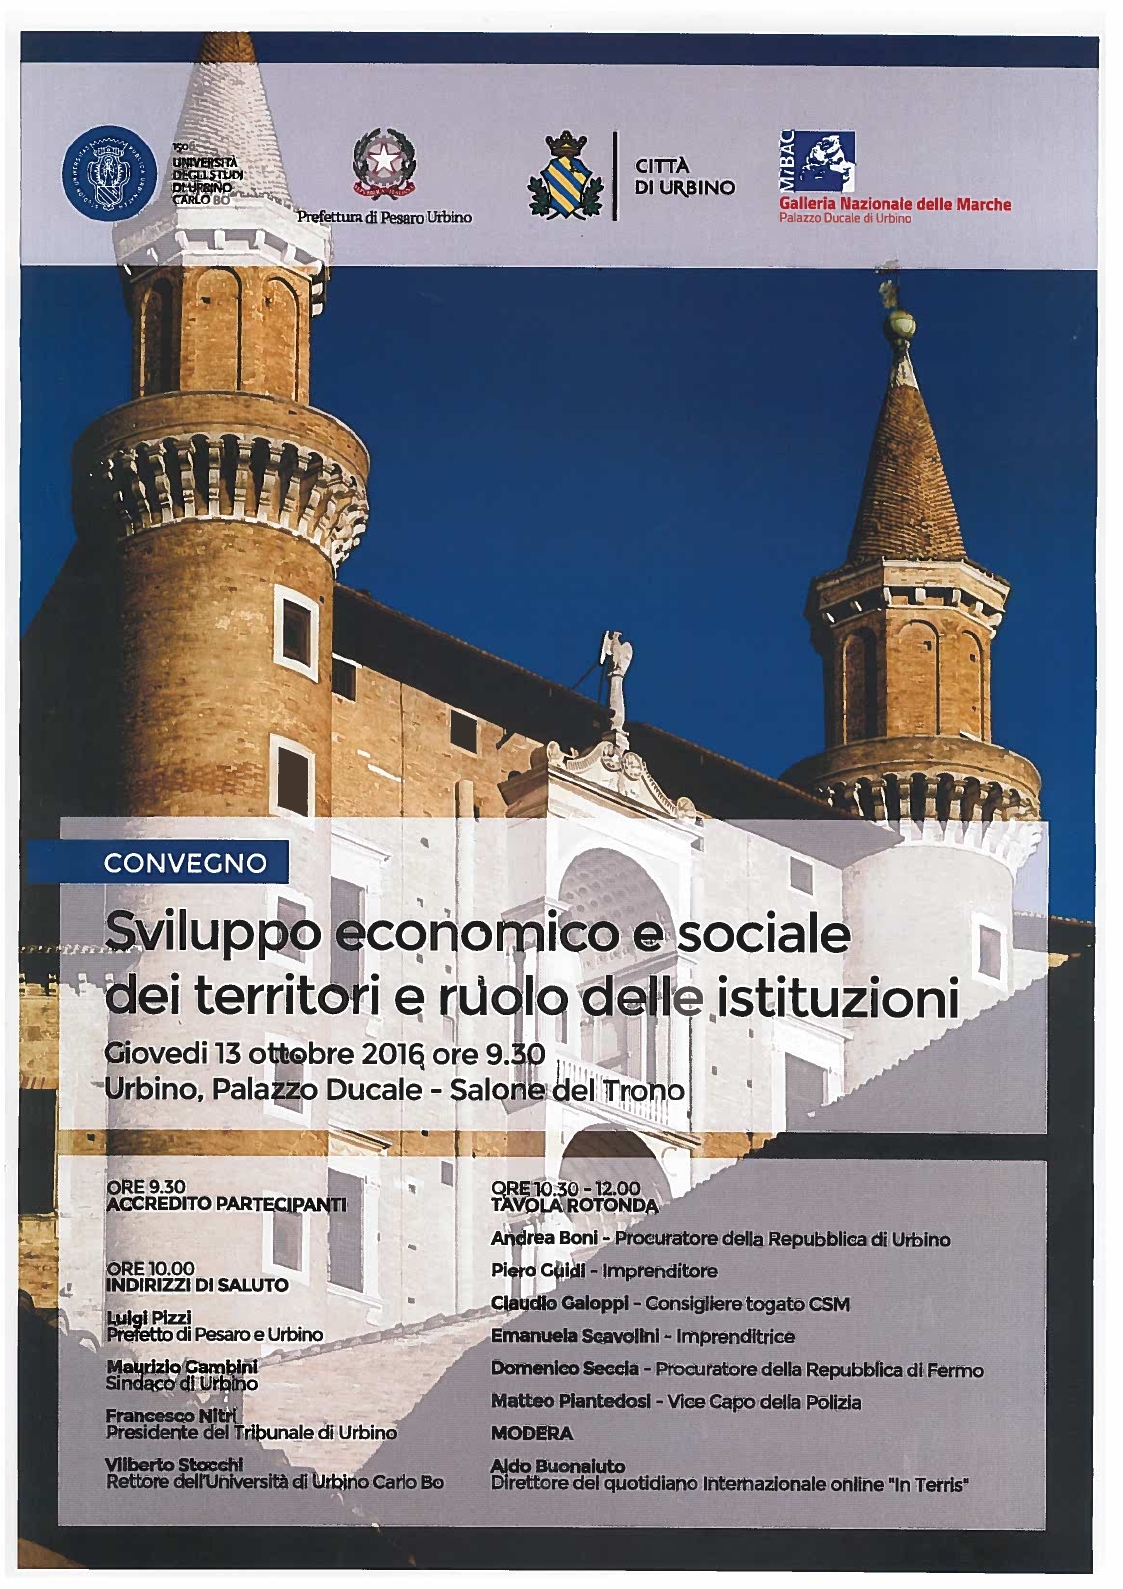 Urbino, 13.10. 2016 - Convegno “Sviluppo economico e sociale dei territori e ruolo delle istituzioni”